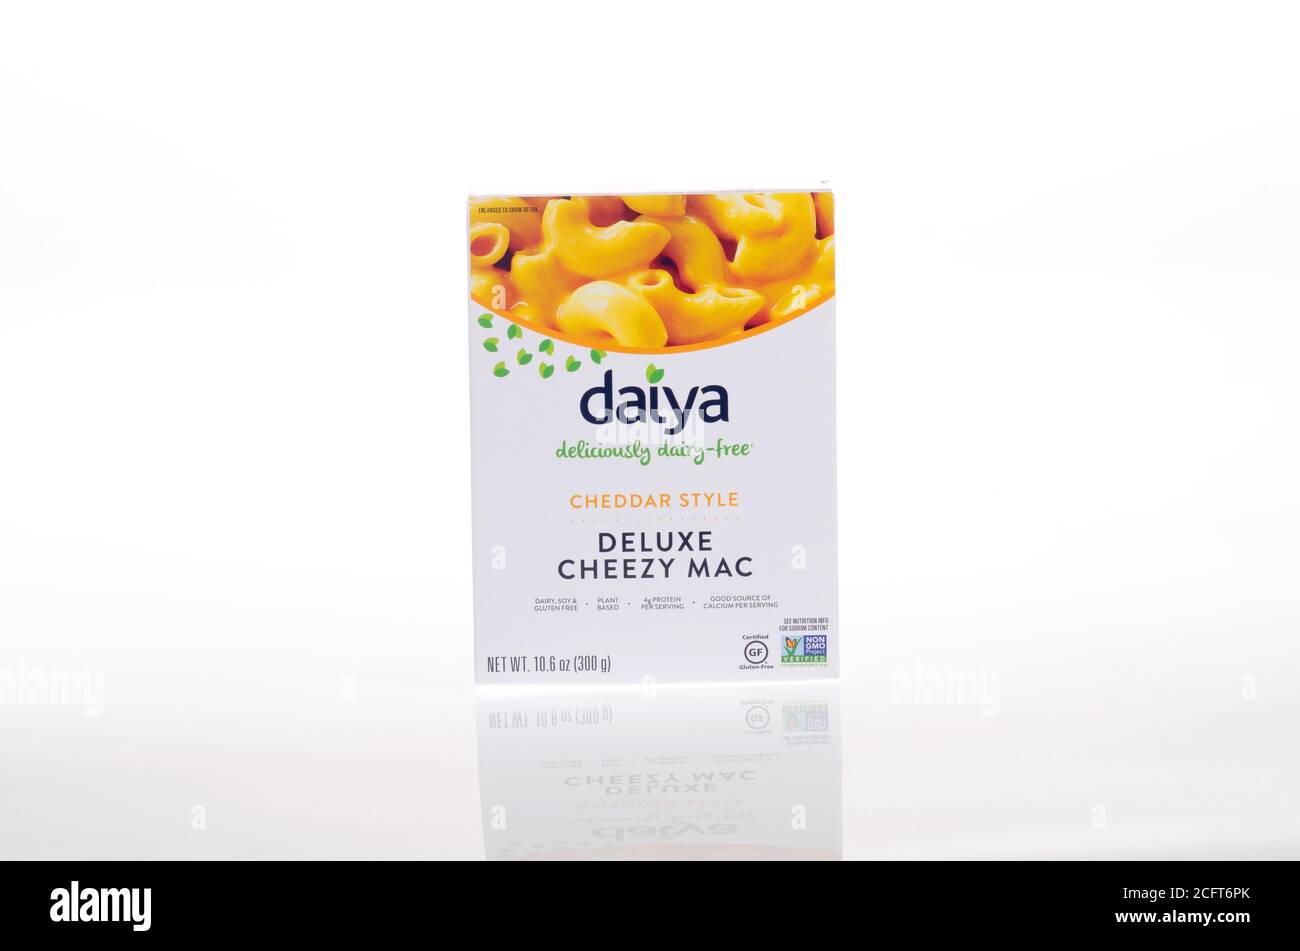 Daiya Vegan Gluten Free Deluxe Cheezy Mac box Stock Photo